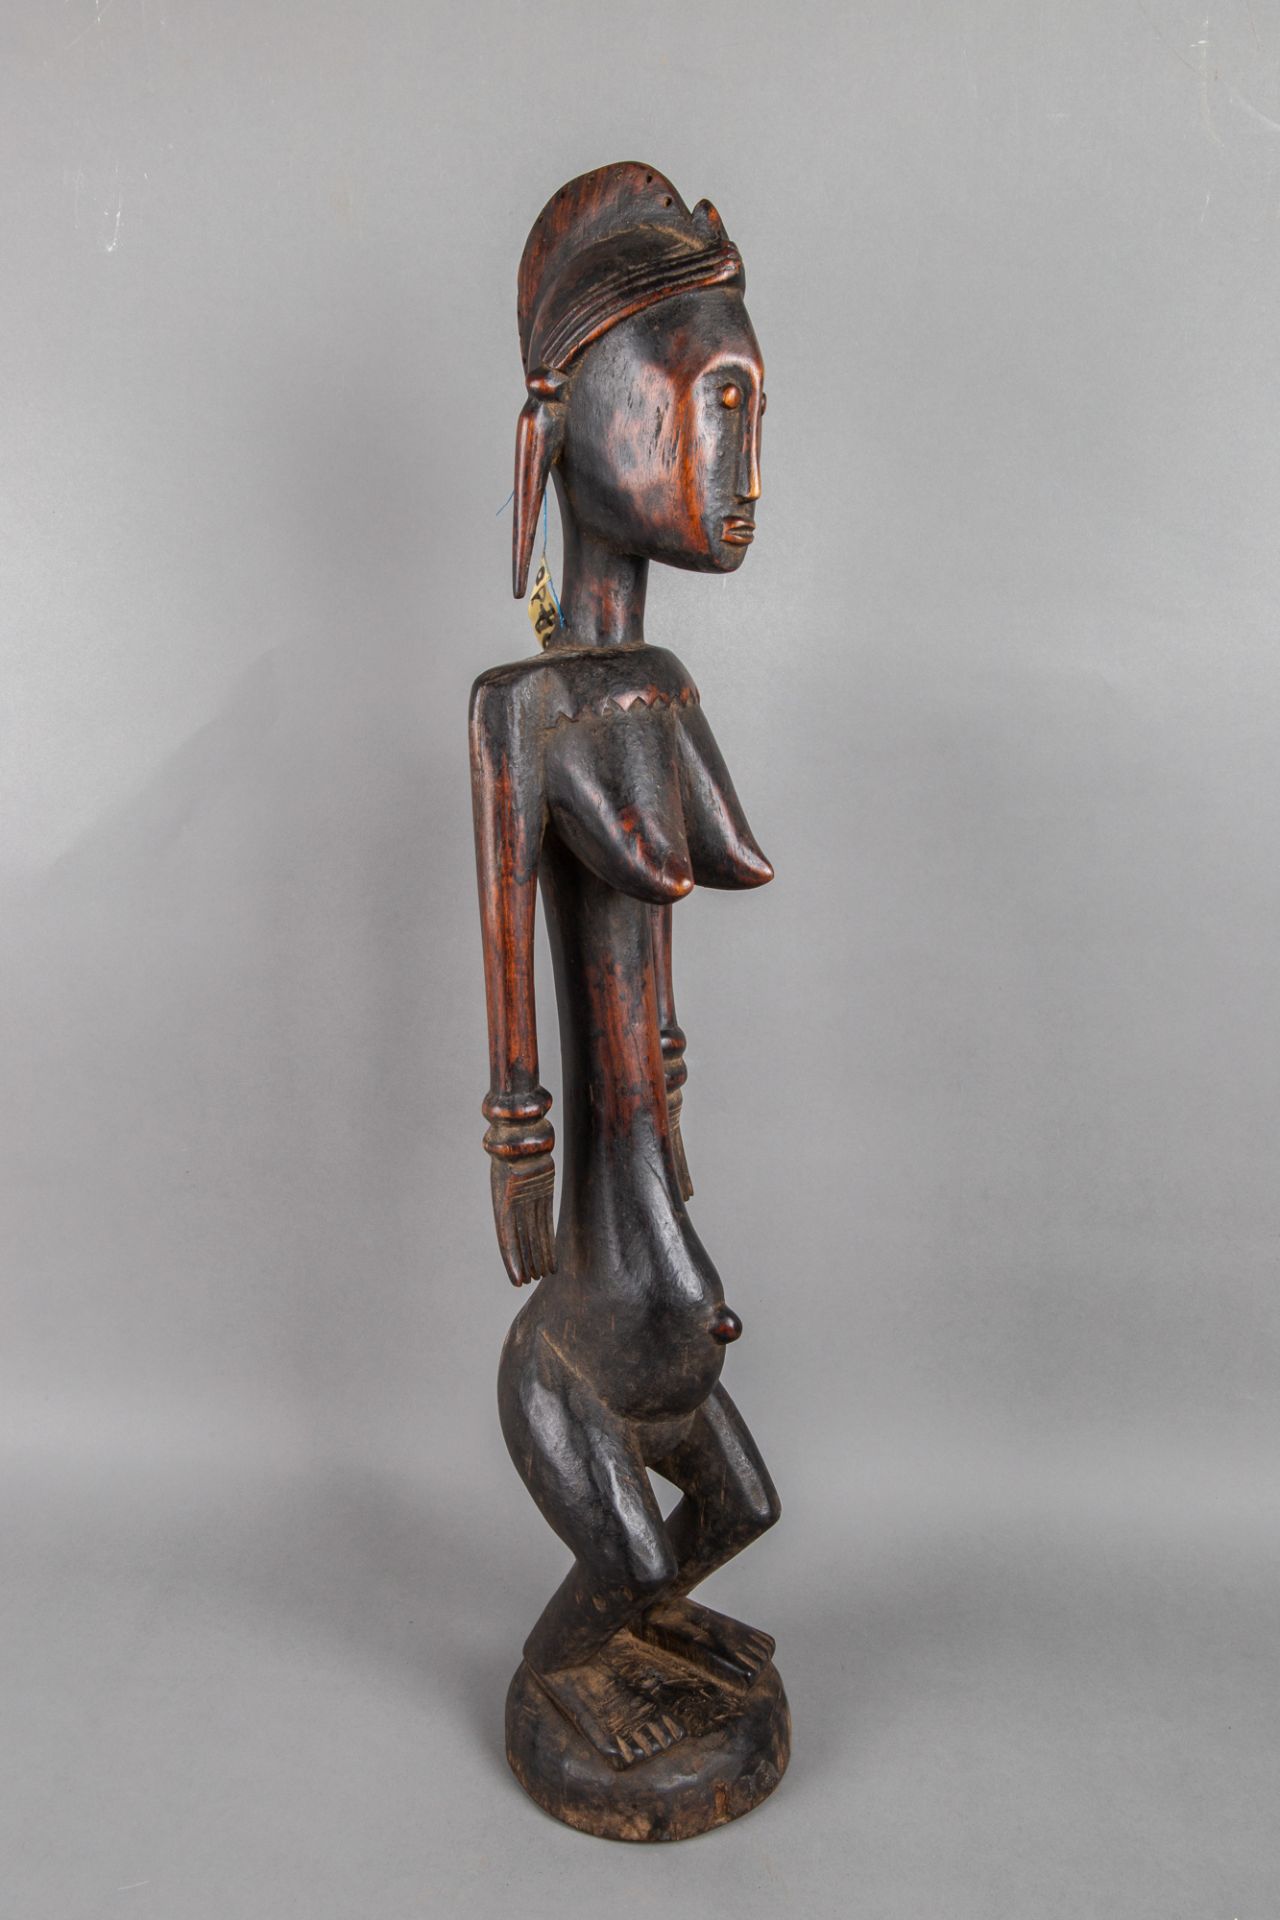 Stehende weibliche Figur 'jo nyeleni', Holz, Bamana, Mali - Image 2 of 4